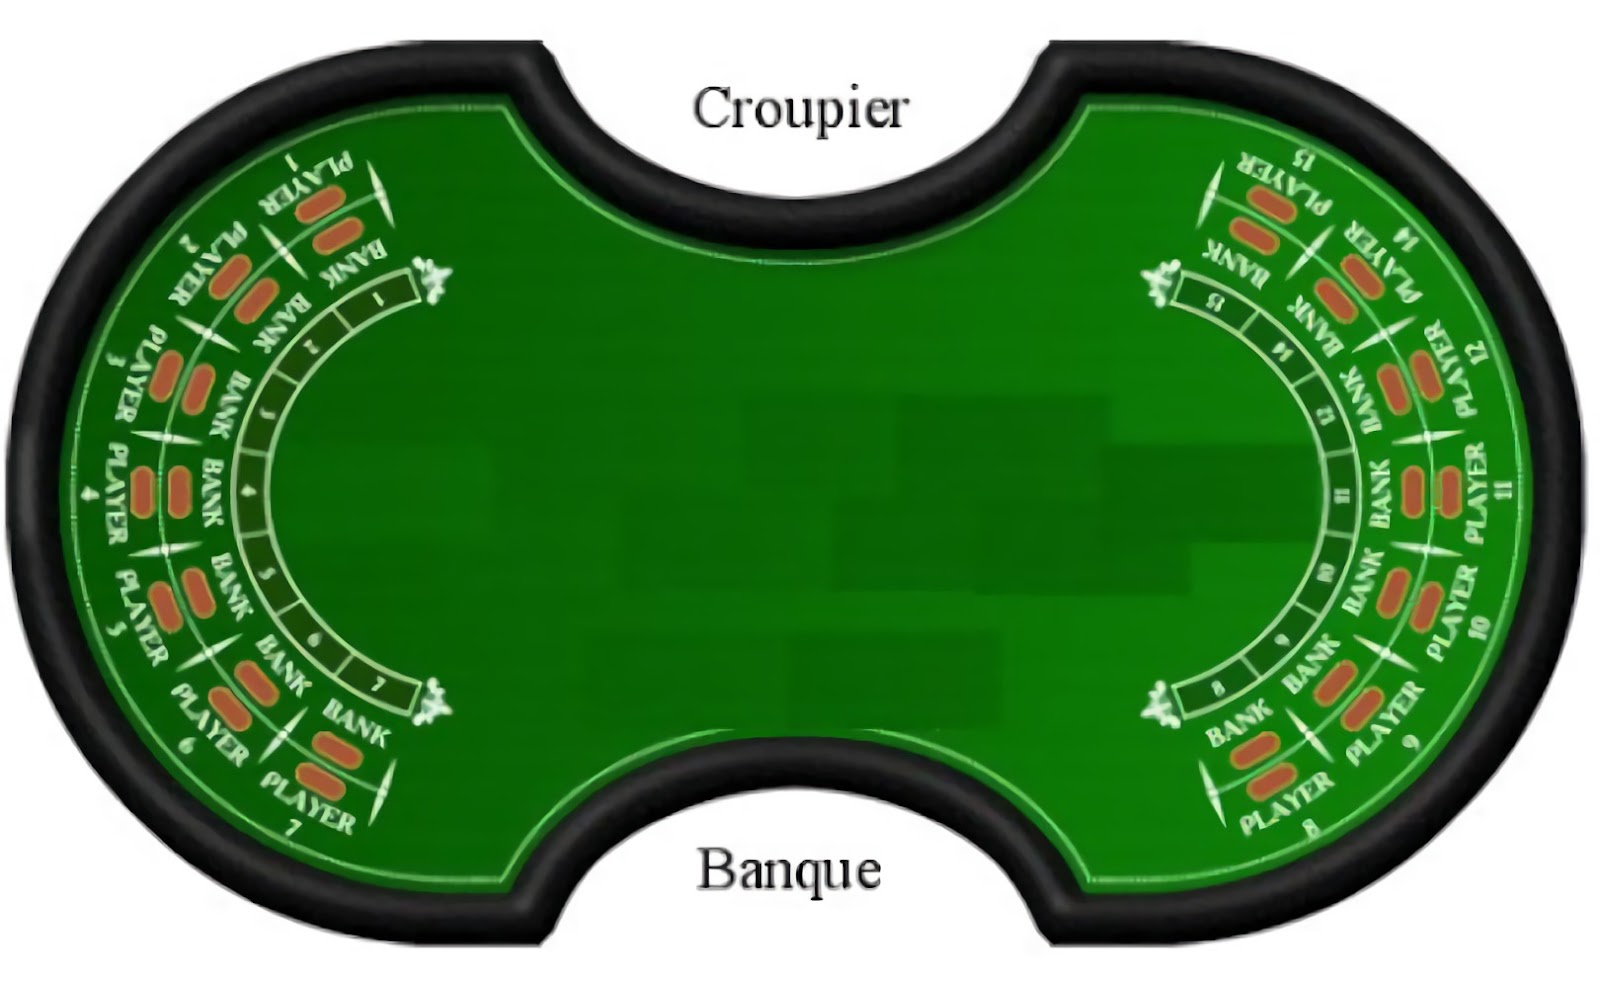 Baccarat Banque còn được gọi là "a deaux tableaux", có nghĩa là "hai cái bàn" trong tiếng Pháp